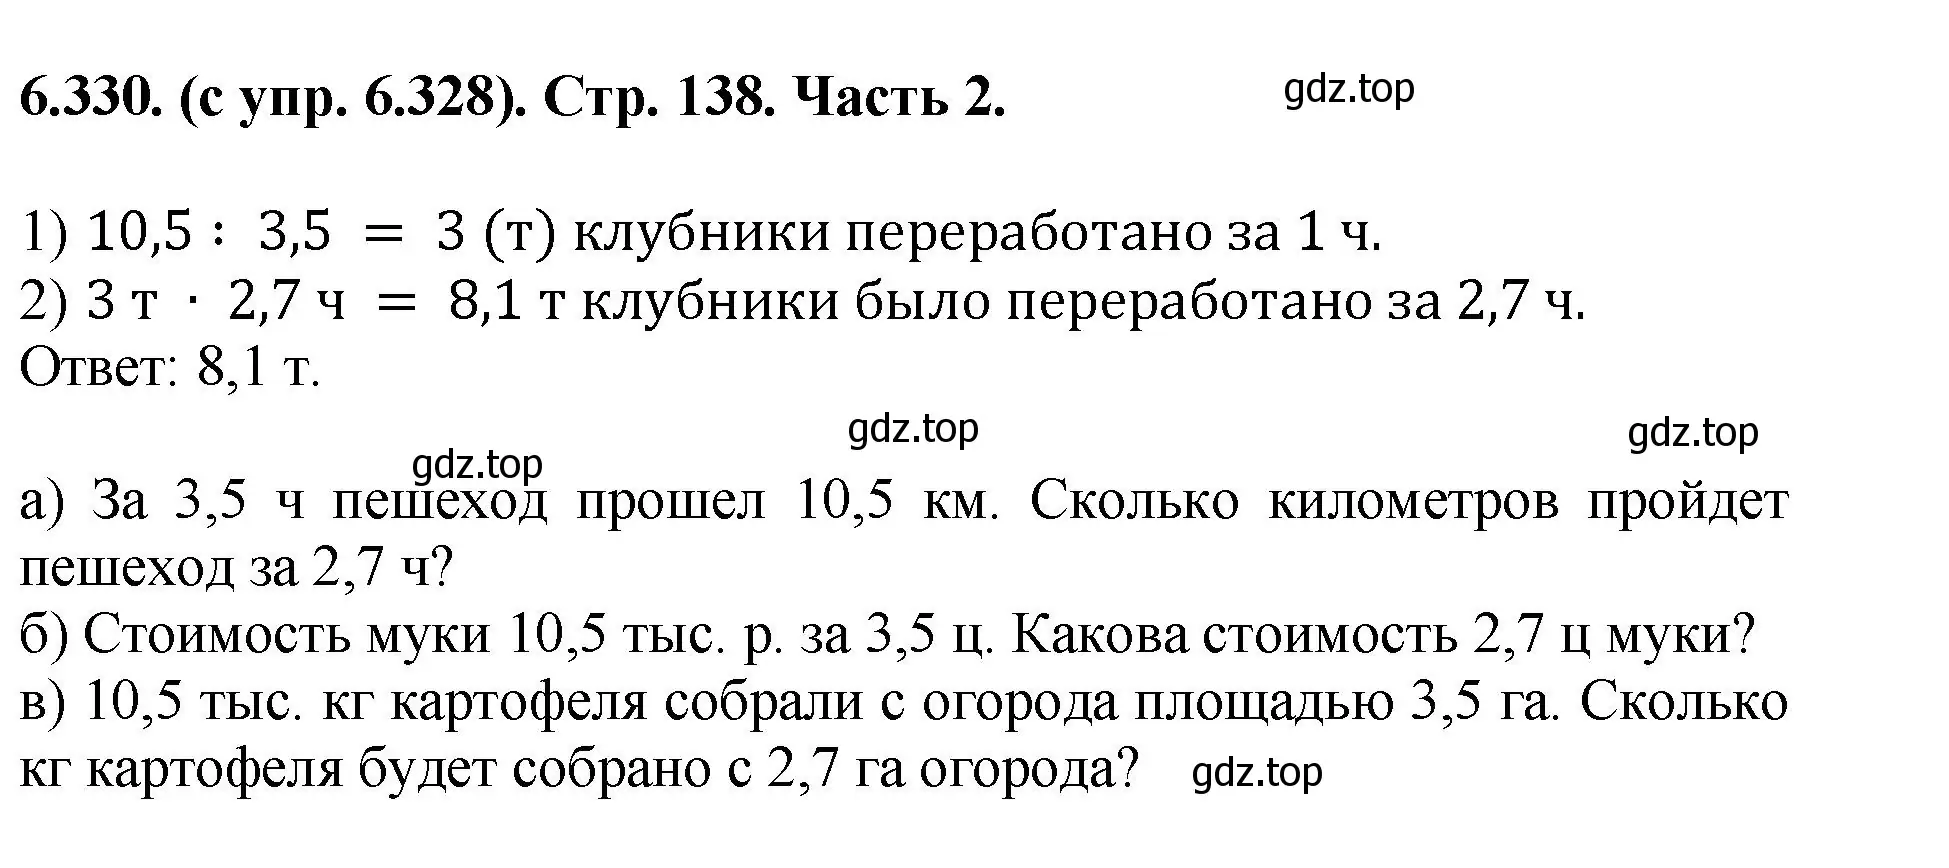 Решение номер 6.330 (страница 138) гдз по математике 5 класс Виленкин, Жохов, учебник 2 часть